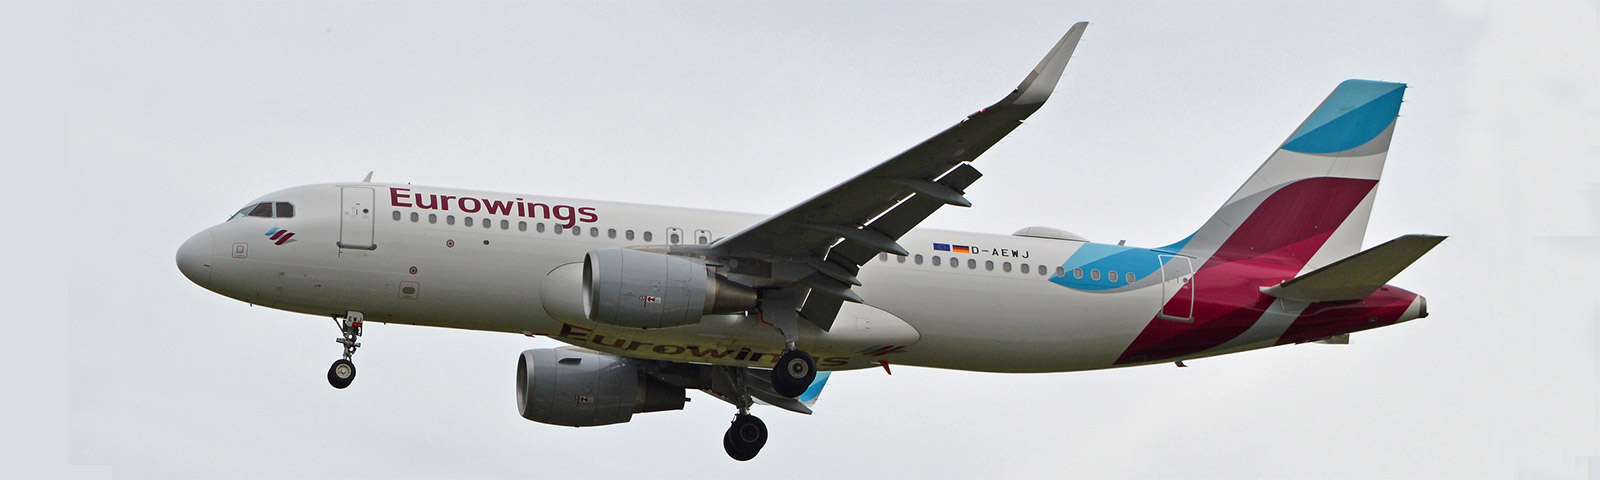 aeroplano in decollo della compagnia eurowings